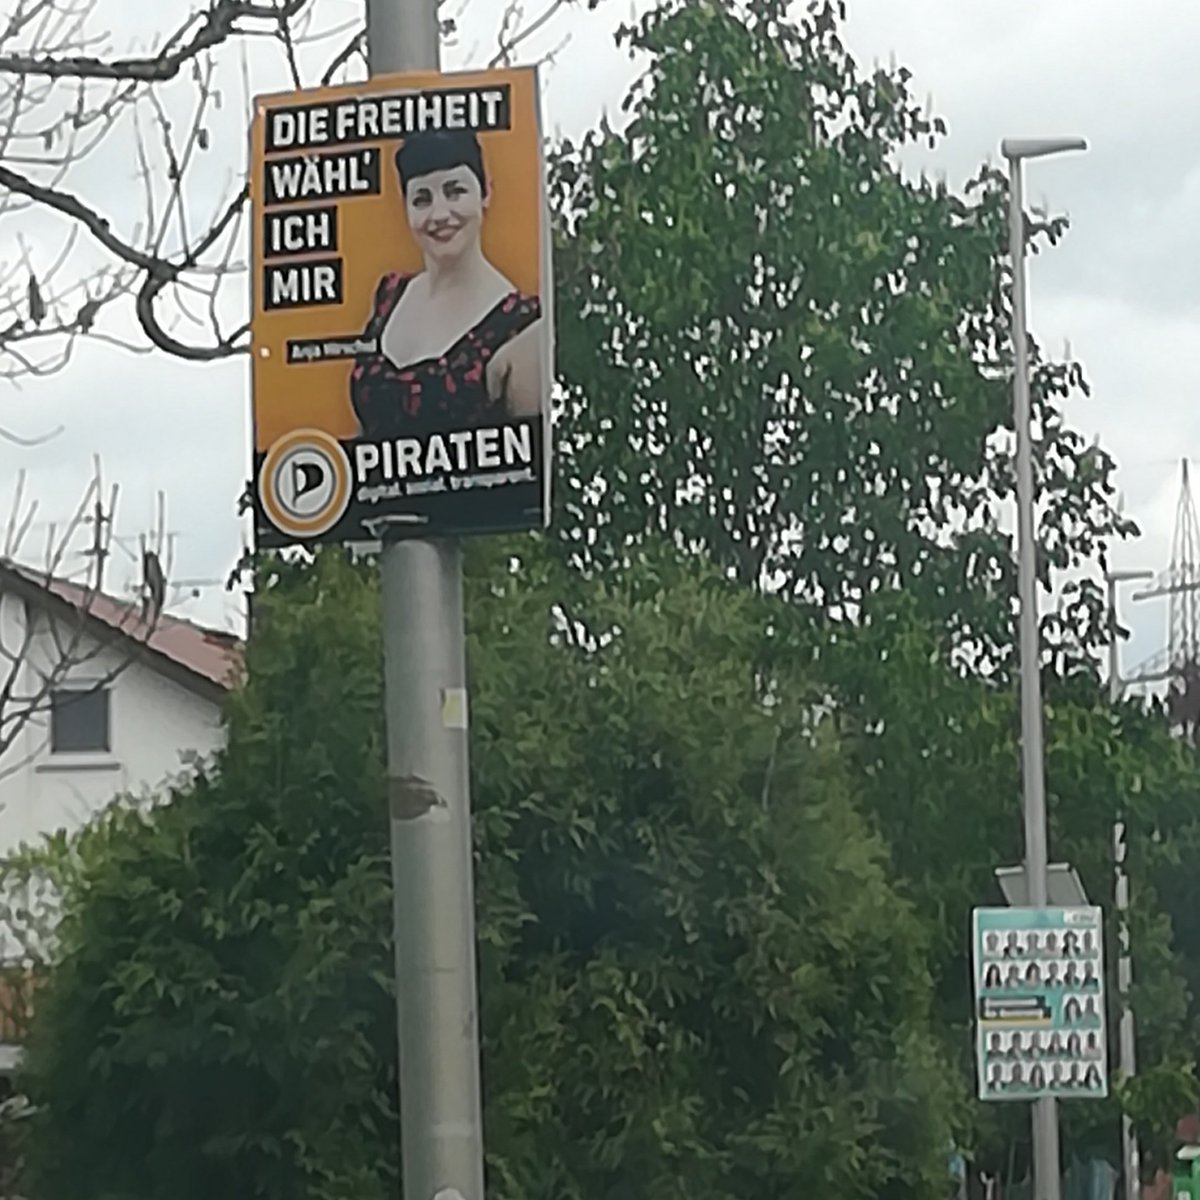 #Backnang wurde diese Woche plakatiert, die Gemeinden östlich und nördlich folgen in der kommenden Woche, dort natürlich nur mit Wahlplakaten der #Piraten.
Und natürlich auch unser größter Vorort Winnenden, der kommt dann am nächsten Wochenende dran.